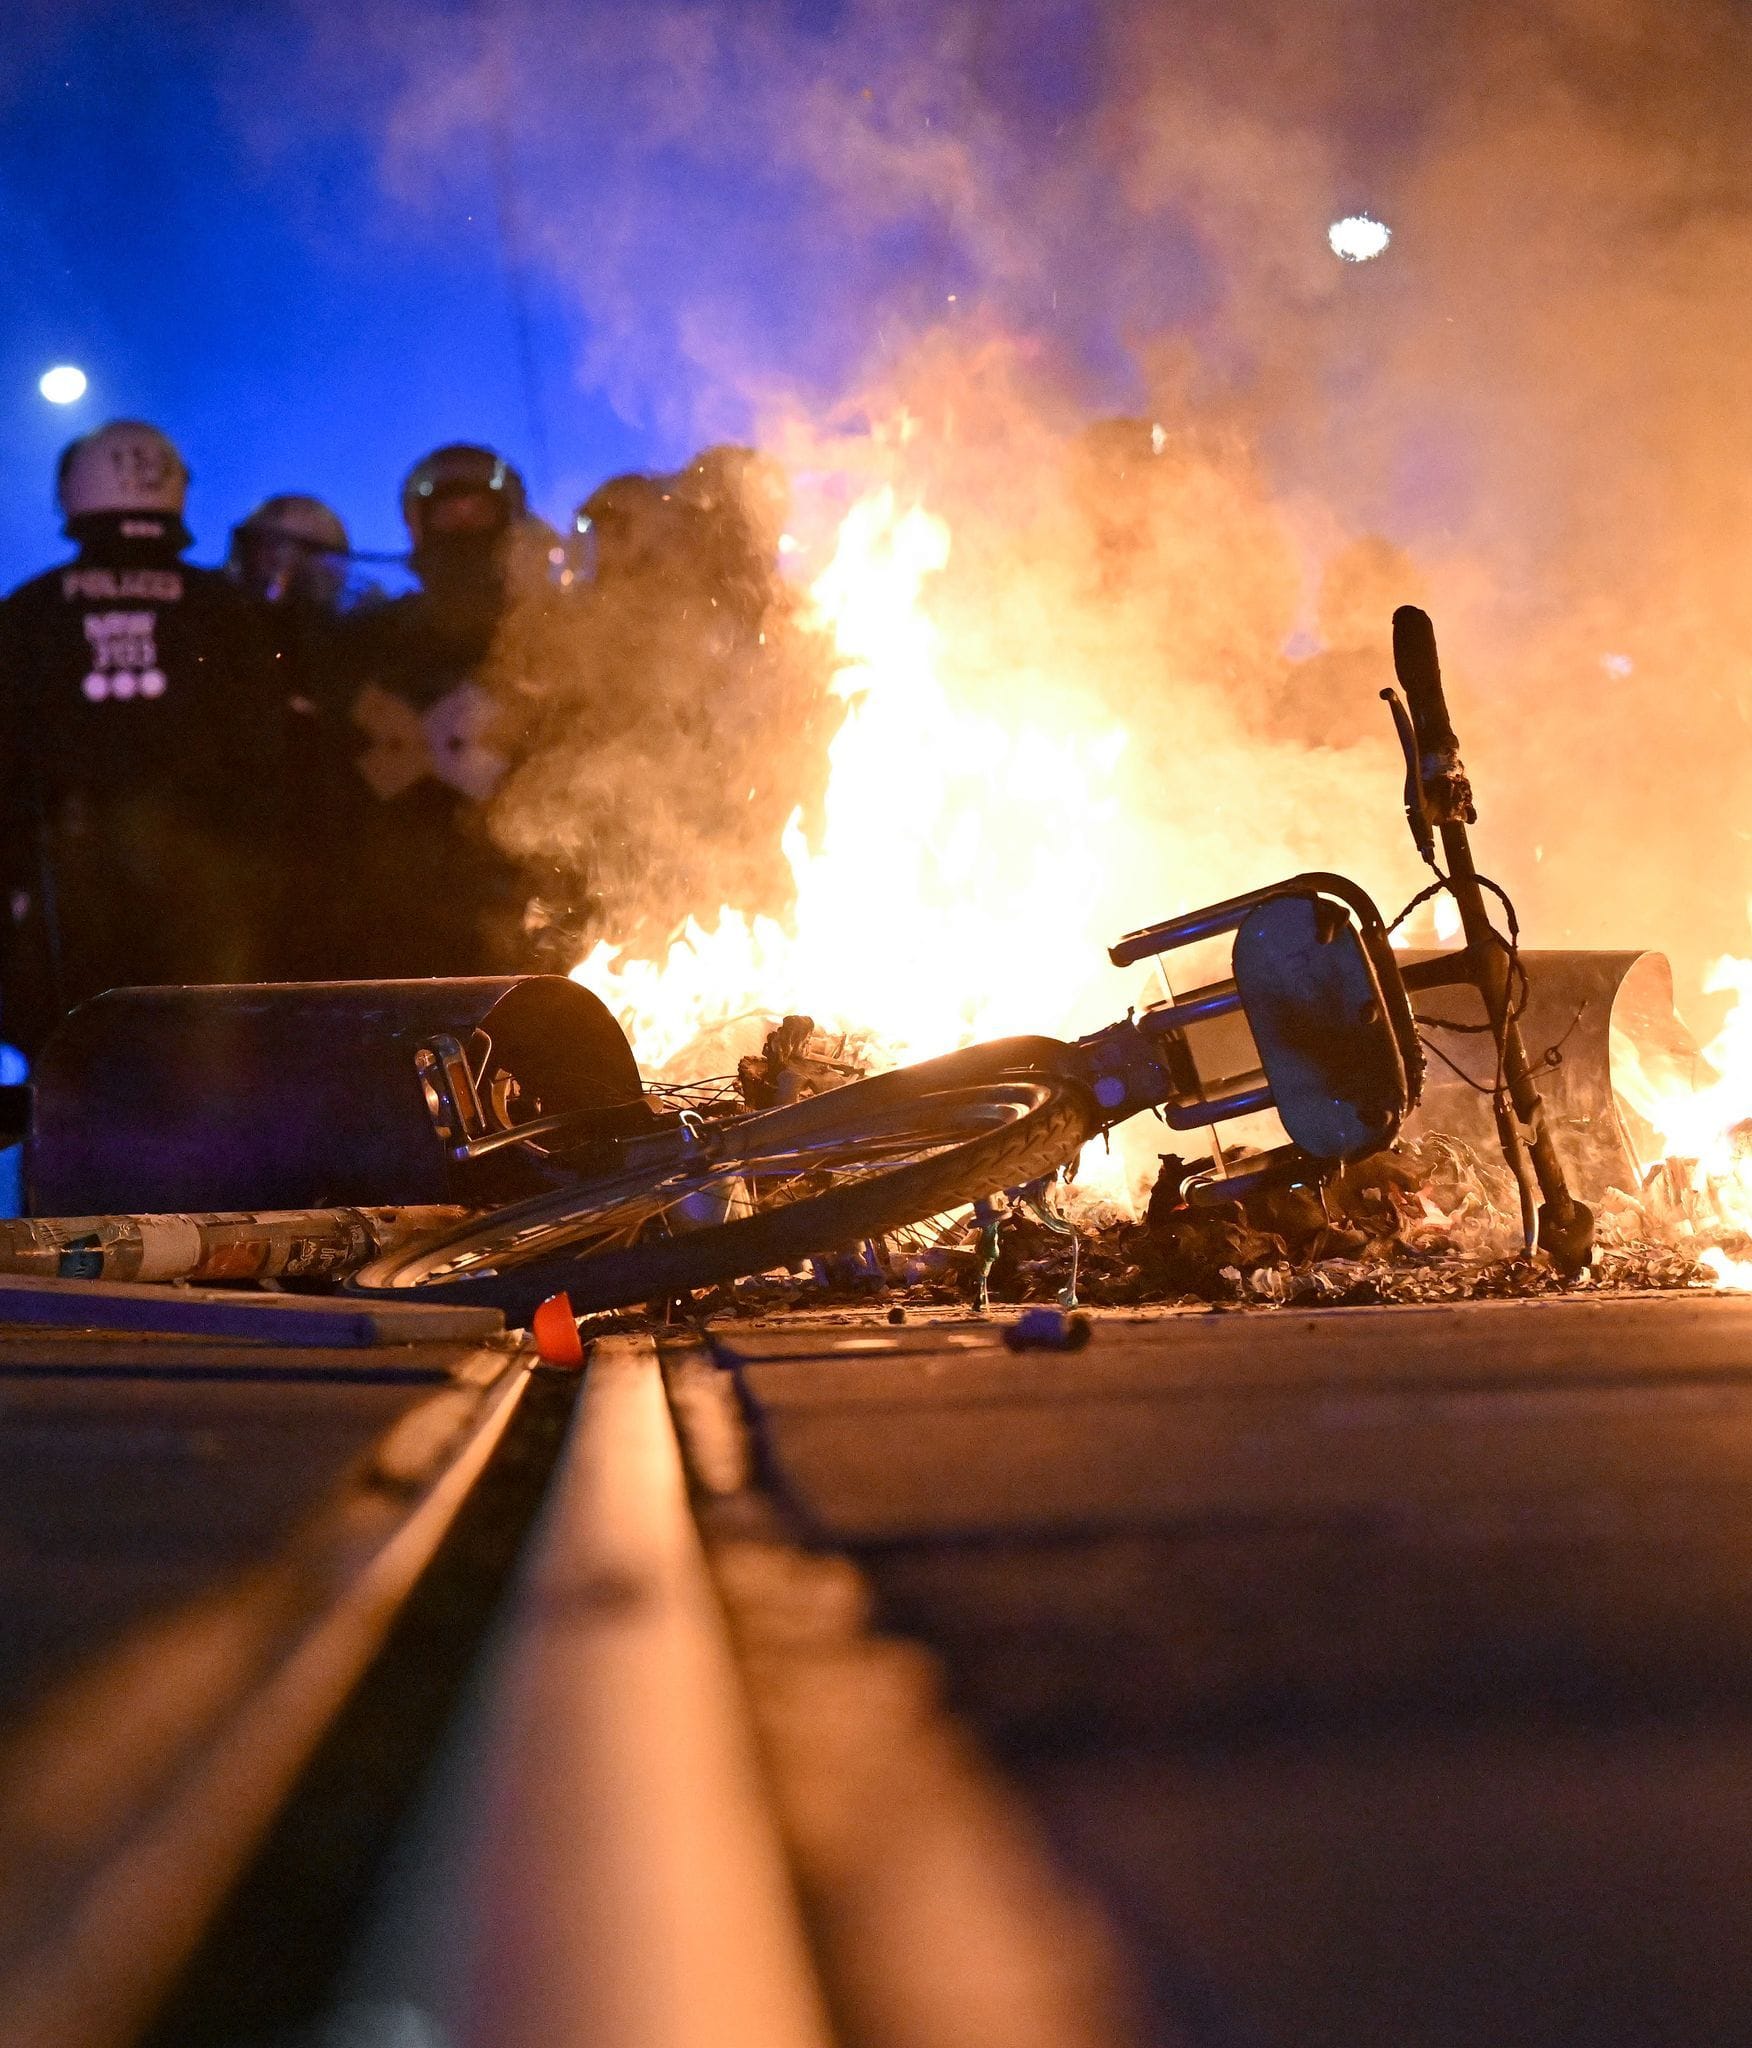 Eine Barrikade brennt im Stadtteil Connewitz in Leipzig. Polizisten stehen im Hintergrund.